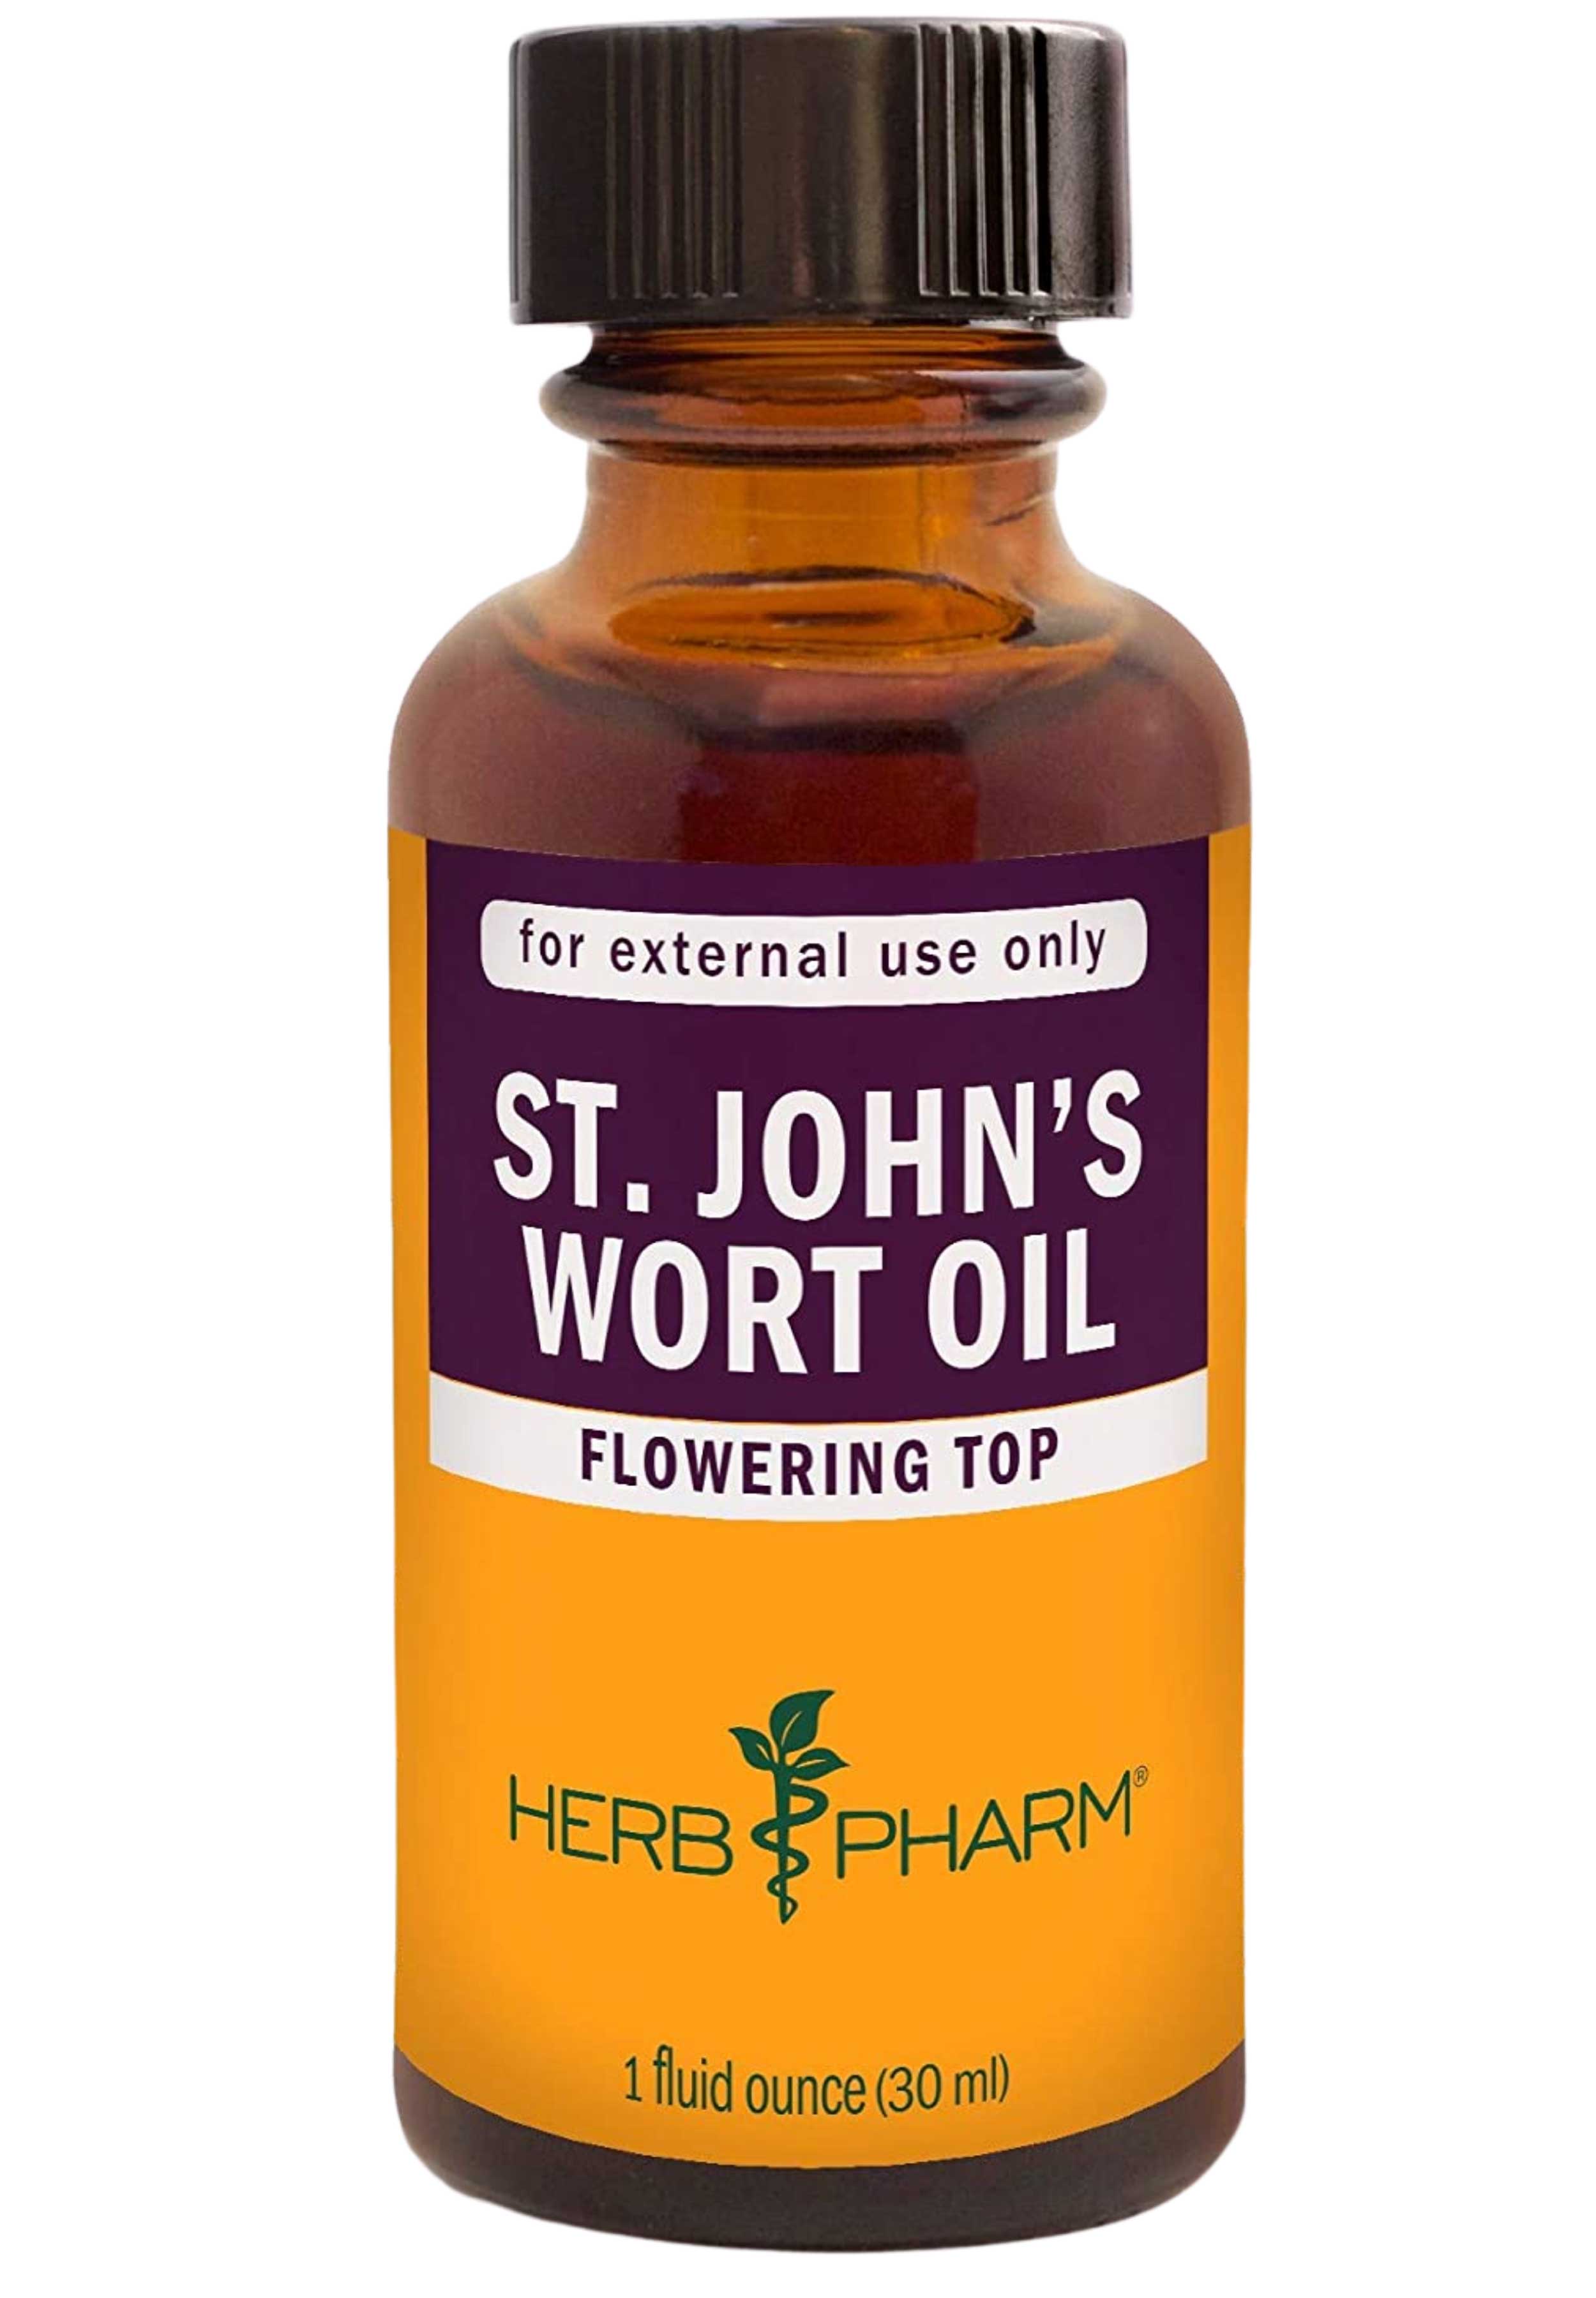 Herb Pharm St. John's Wort Oil